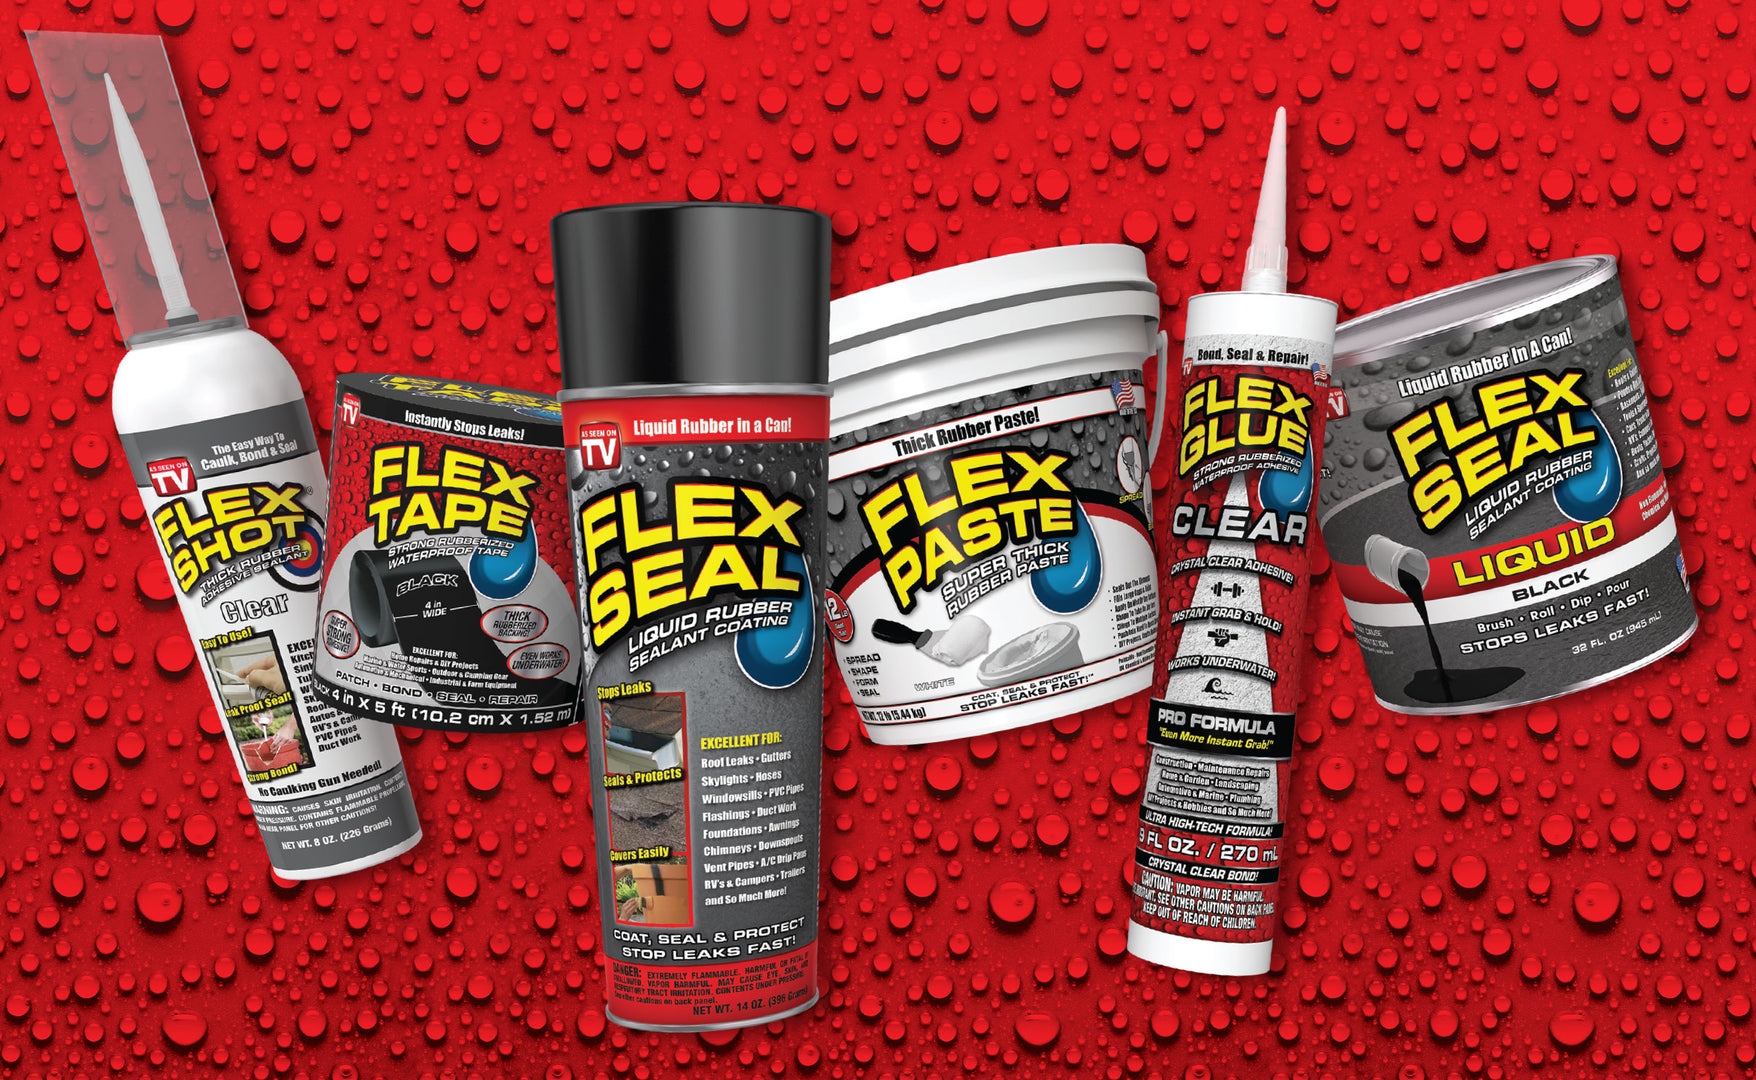 Flex Tape®, Official Site